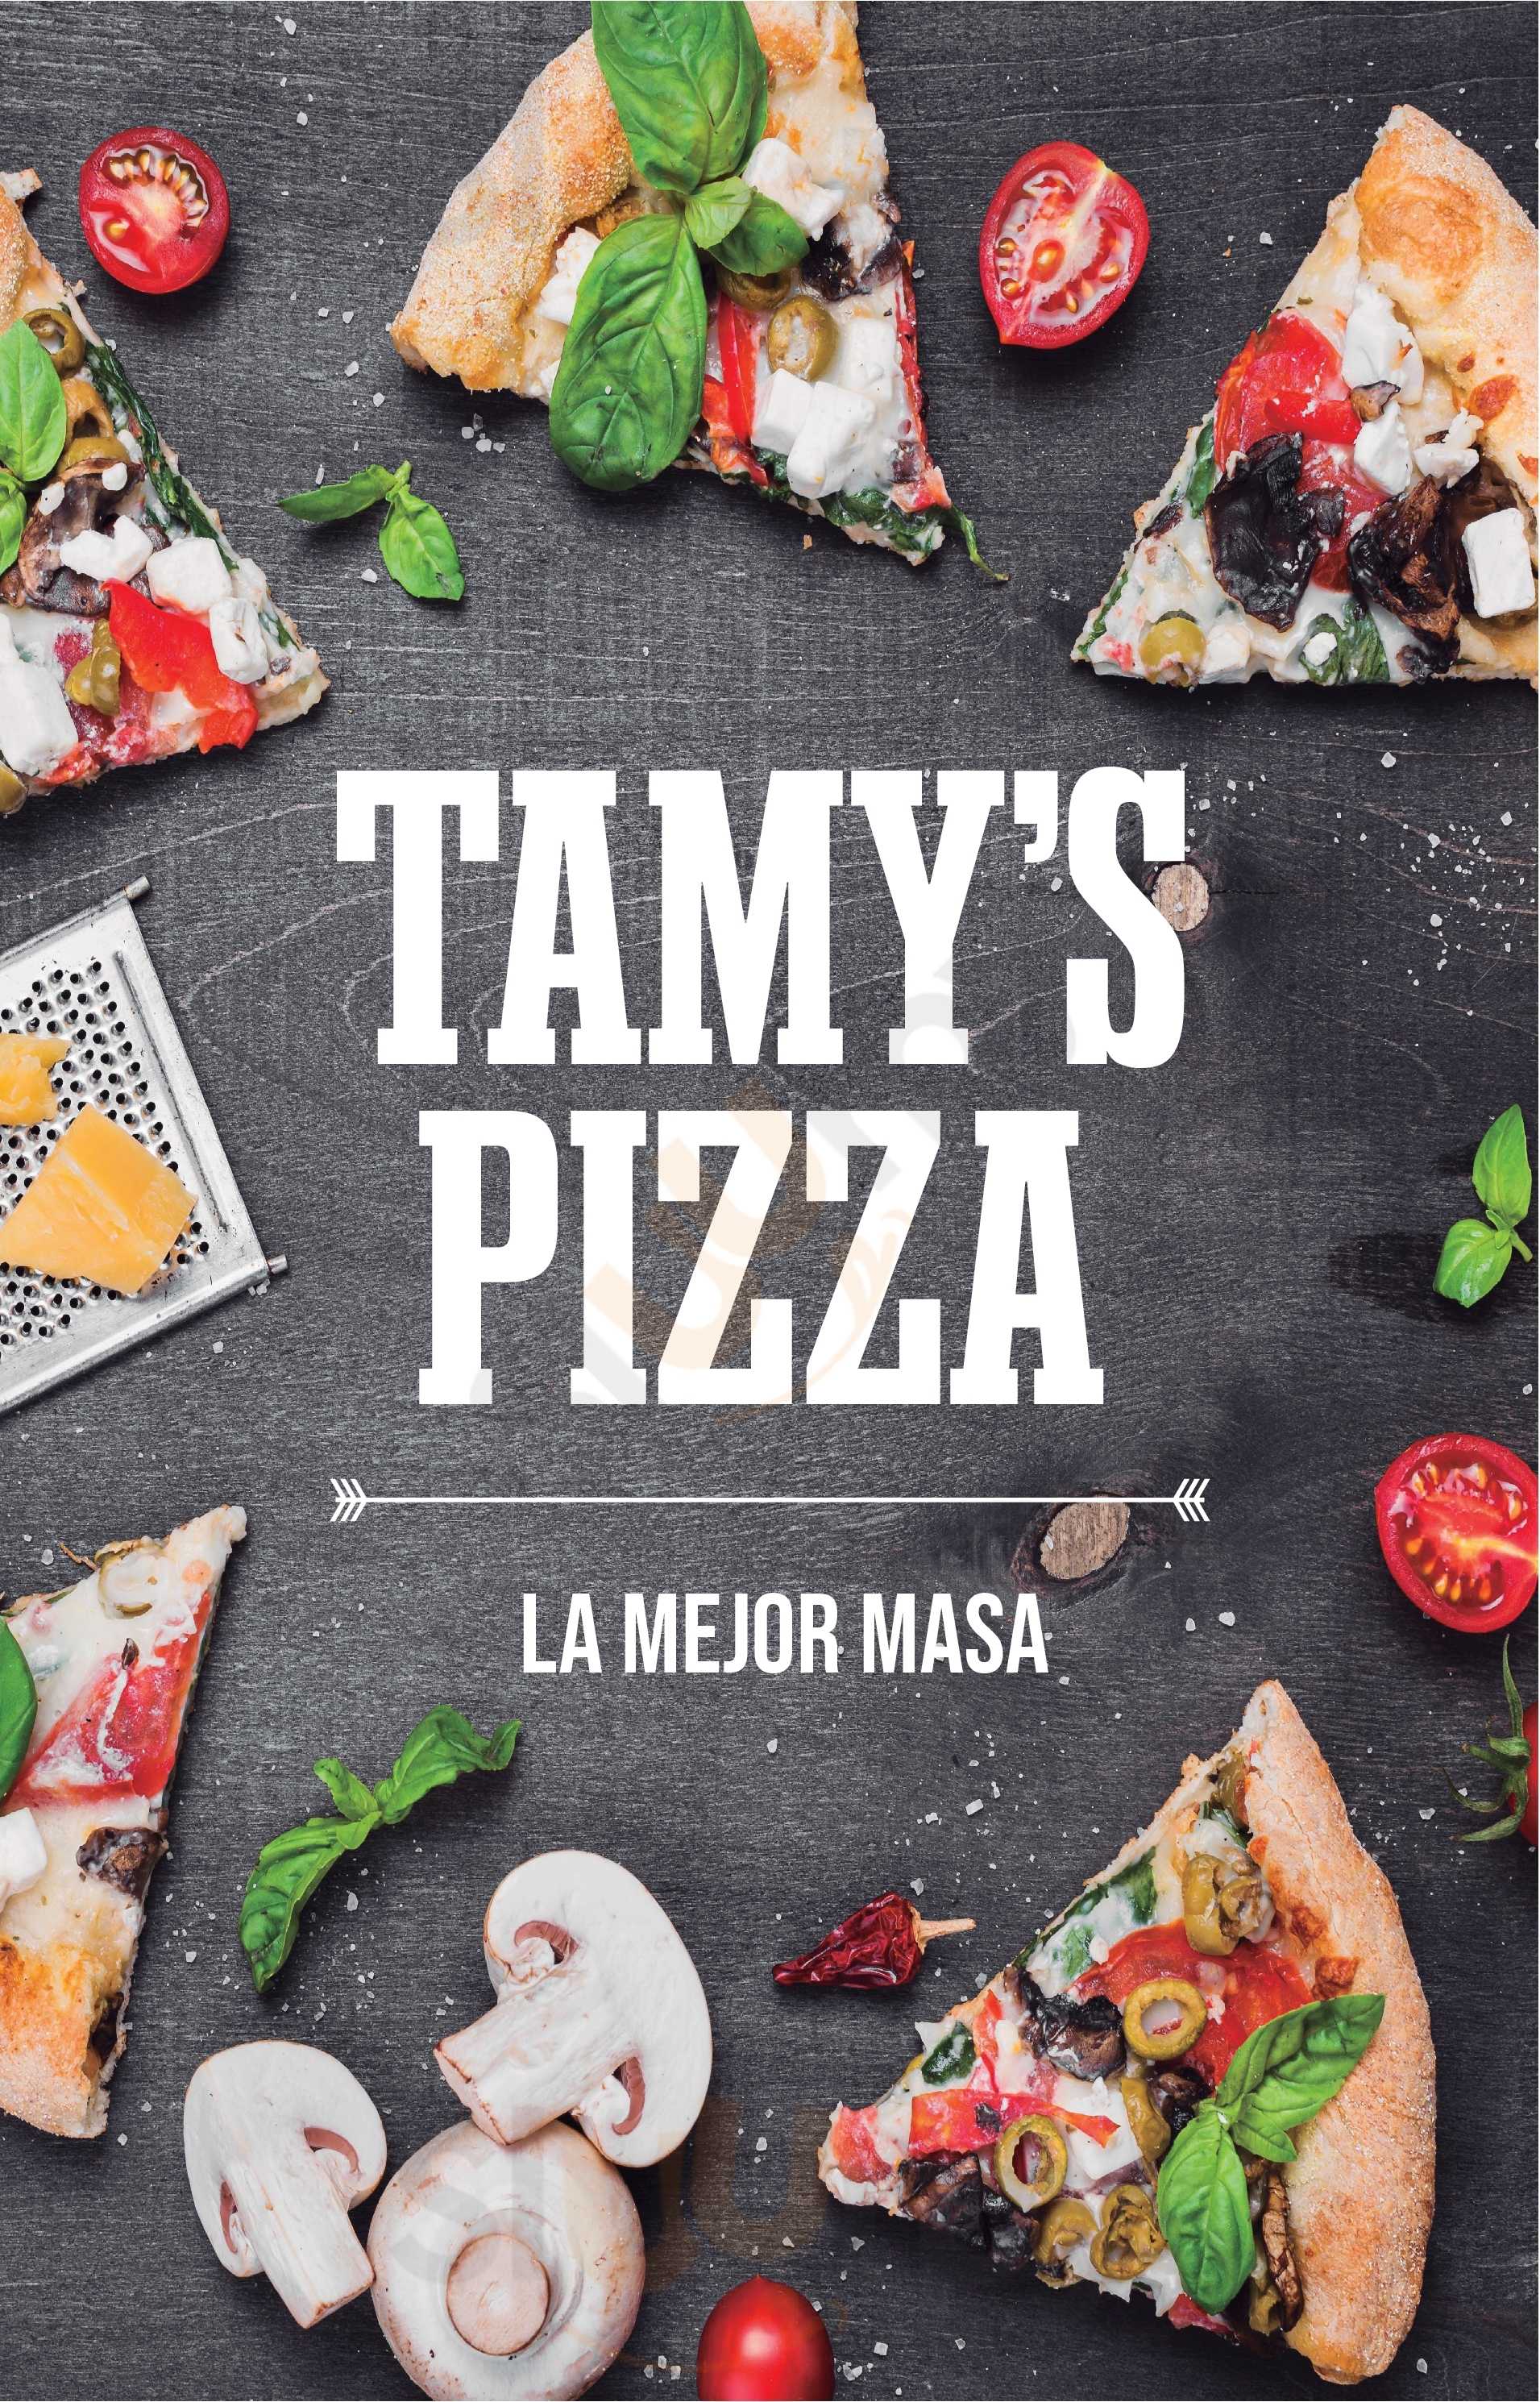 Tamy's Pizza Callao Menu - 1